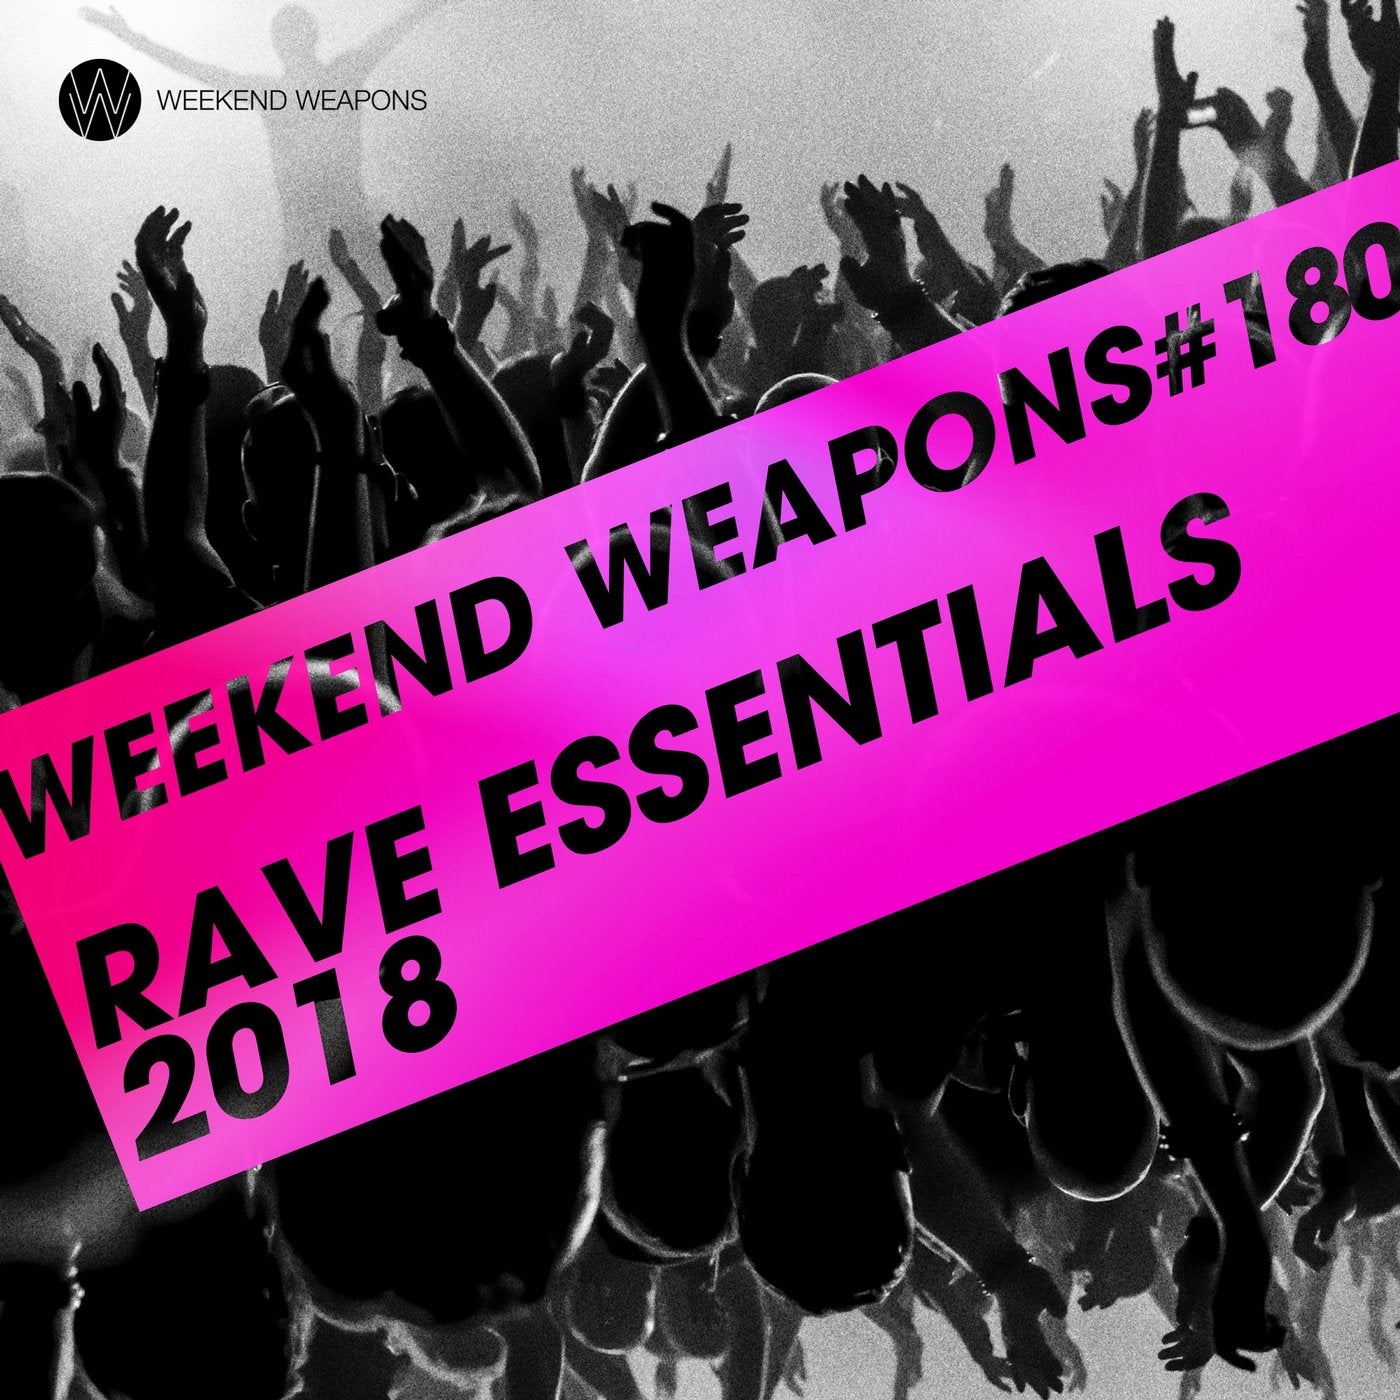 Rave Essentials 2018